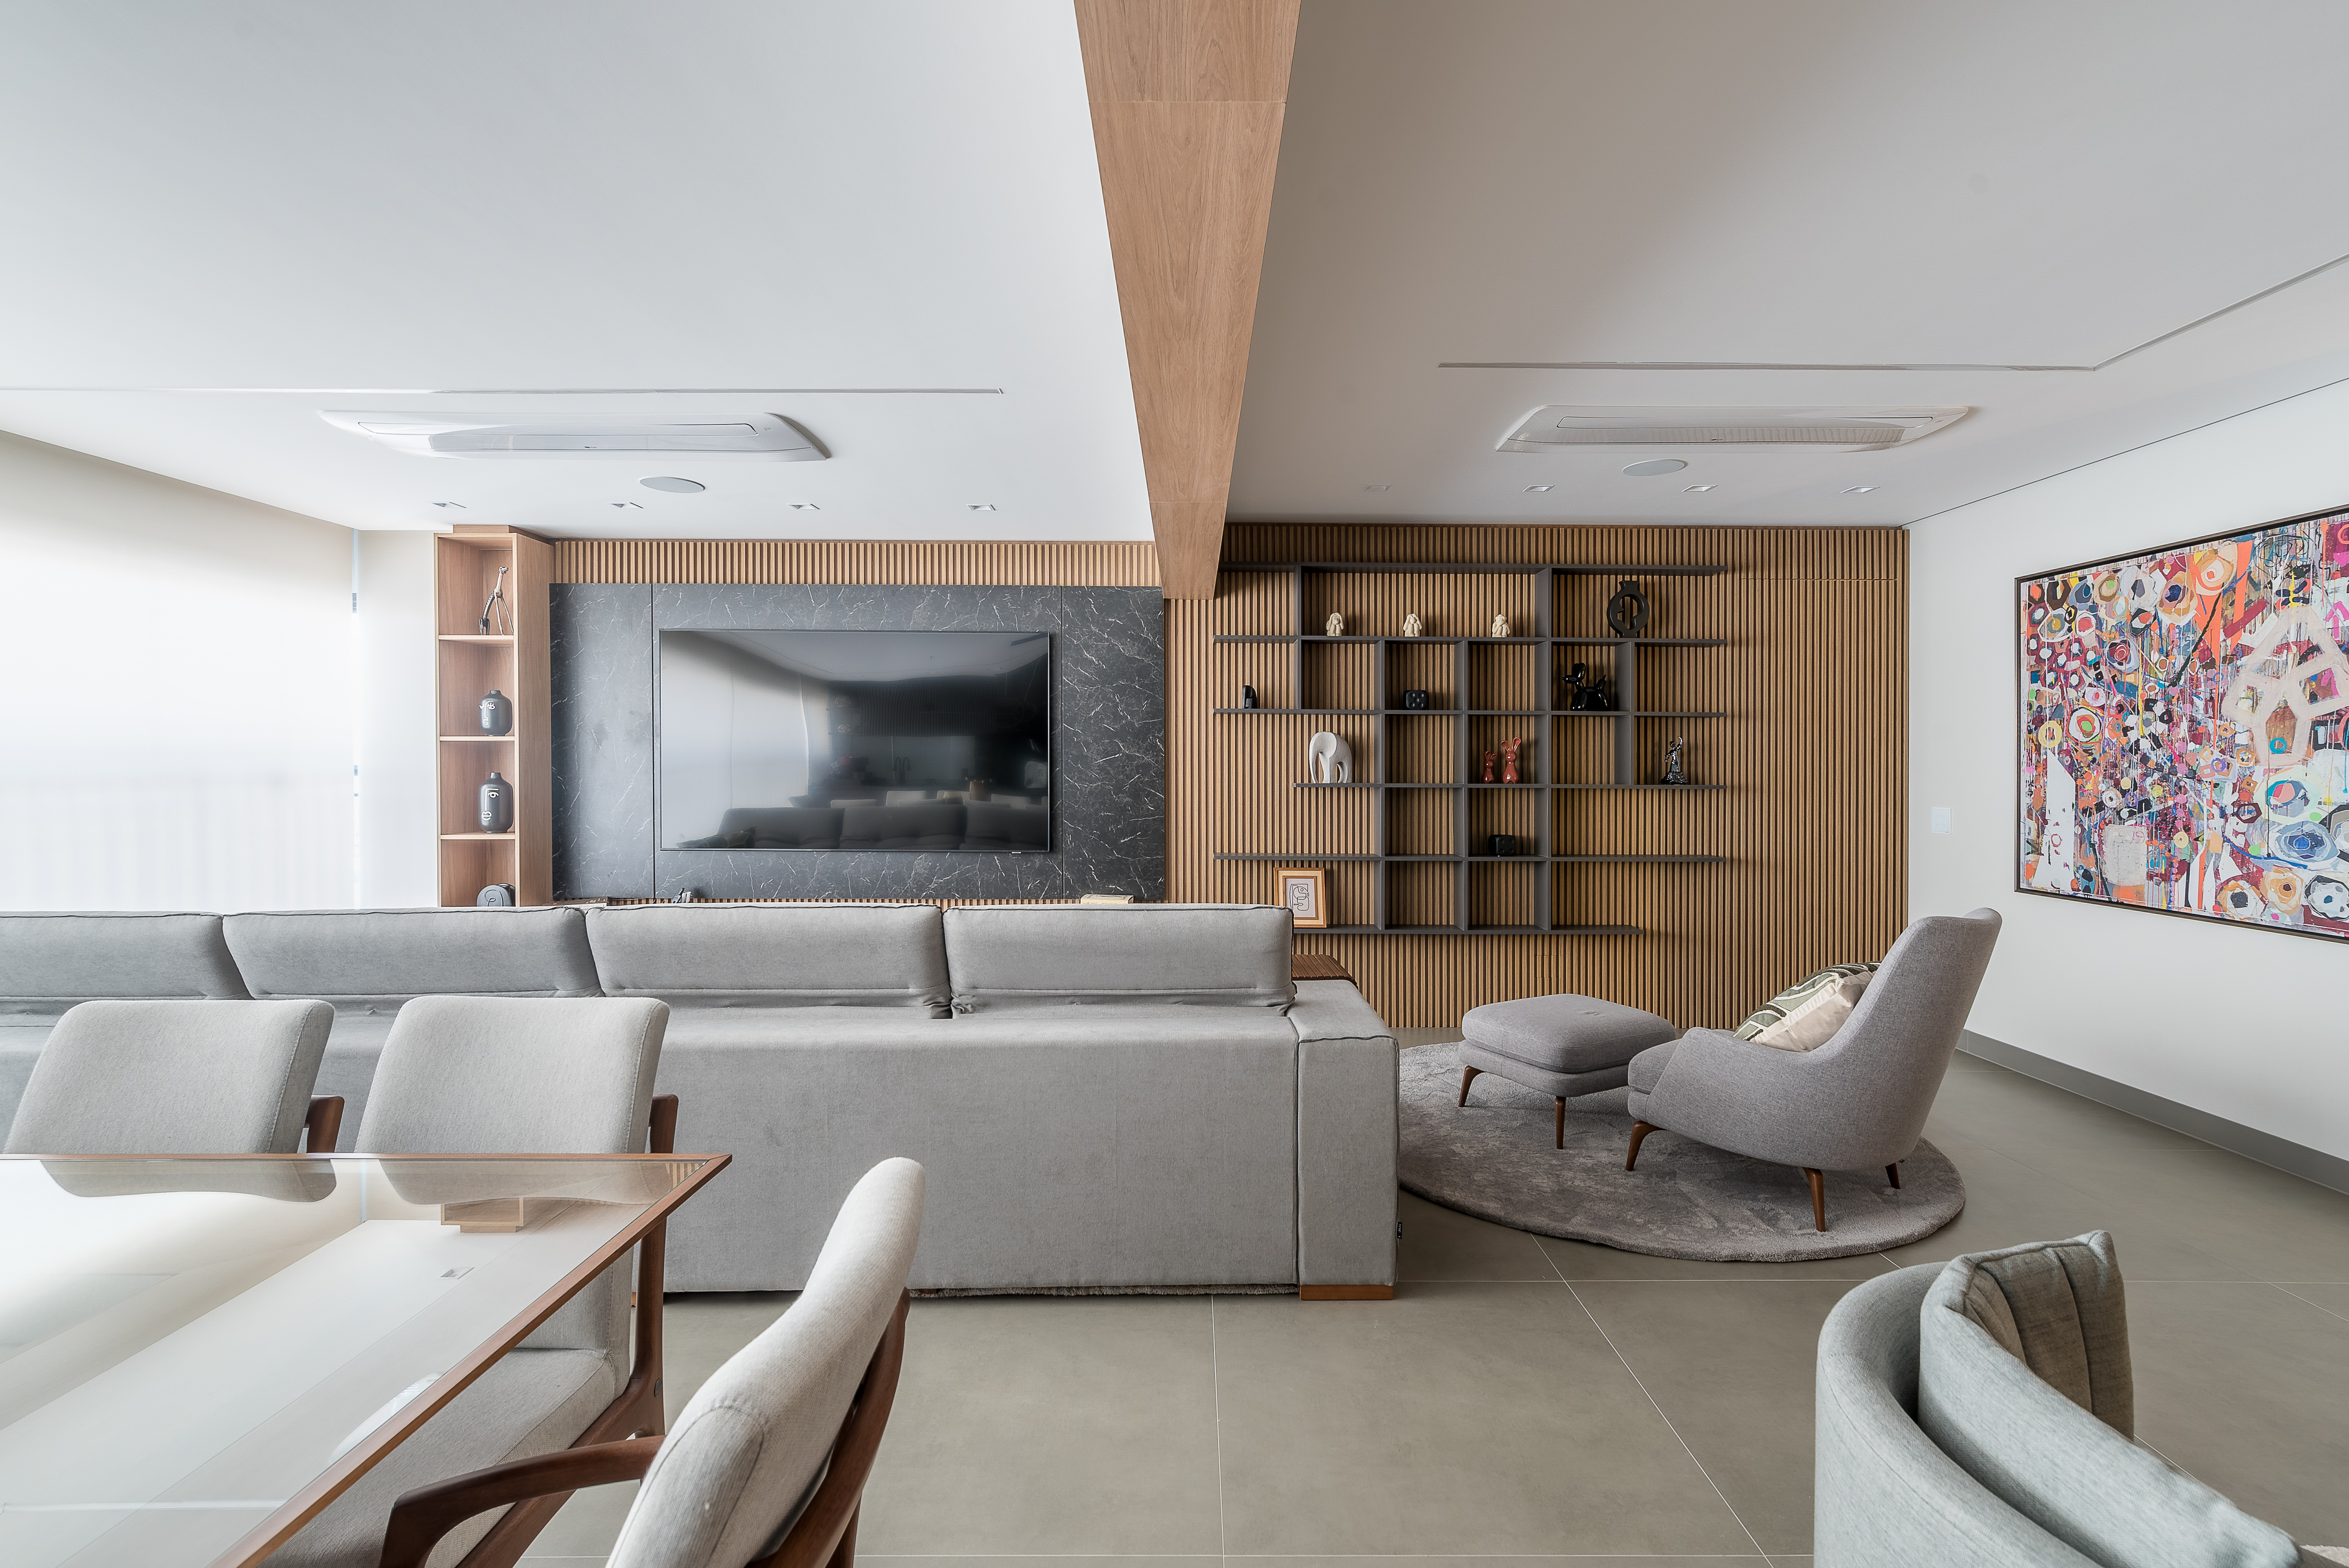 Marcenaria e sofá de 4m são destaques em apê aconchegante de 159m². Projeto de Elvira Oliveira Arquitetura. Na foto, sala de estar com sofá cinza, painel marmorizado e parede ripada.